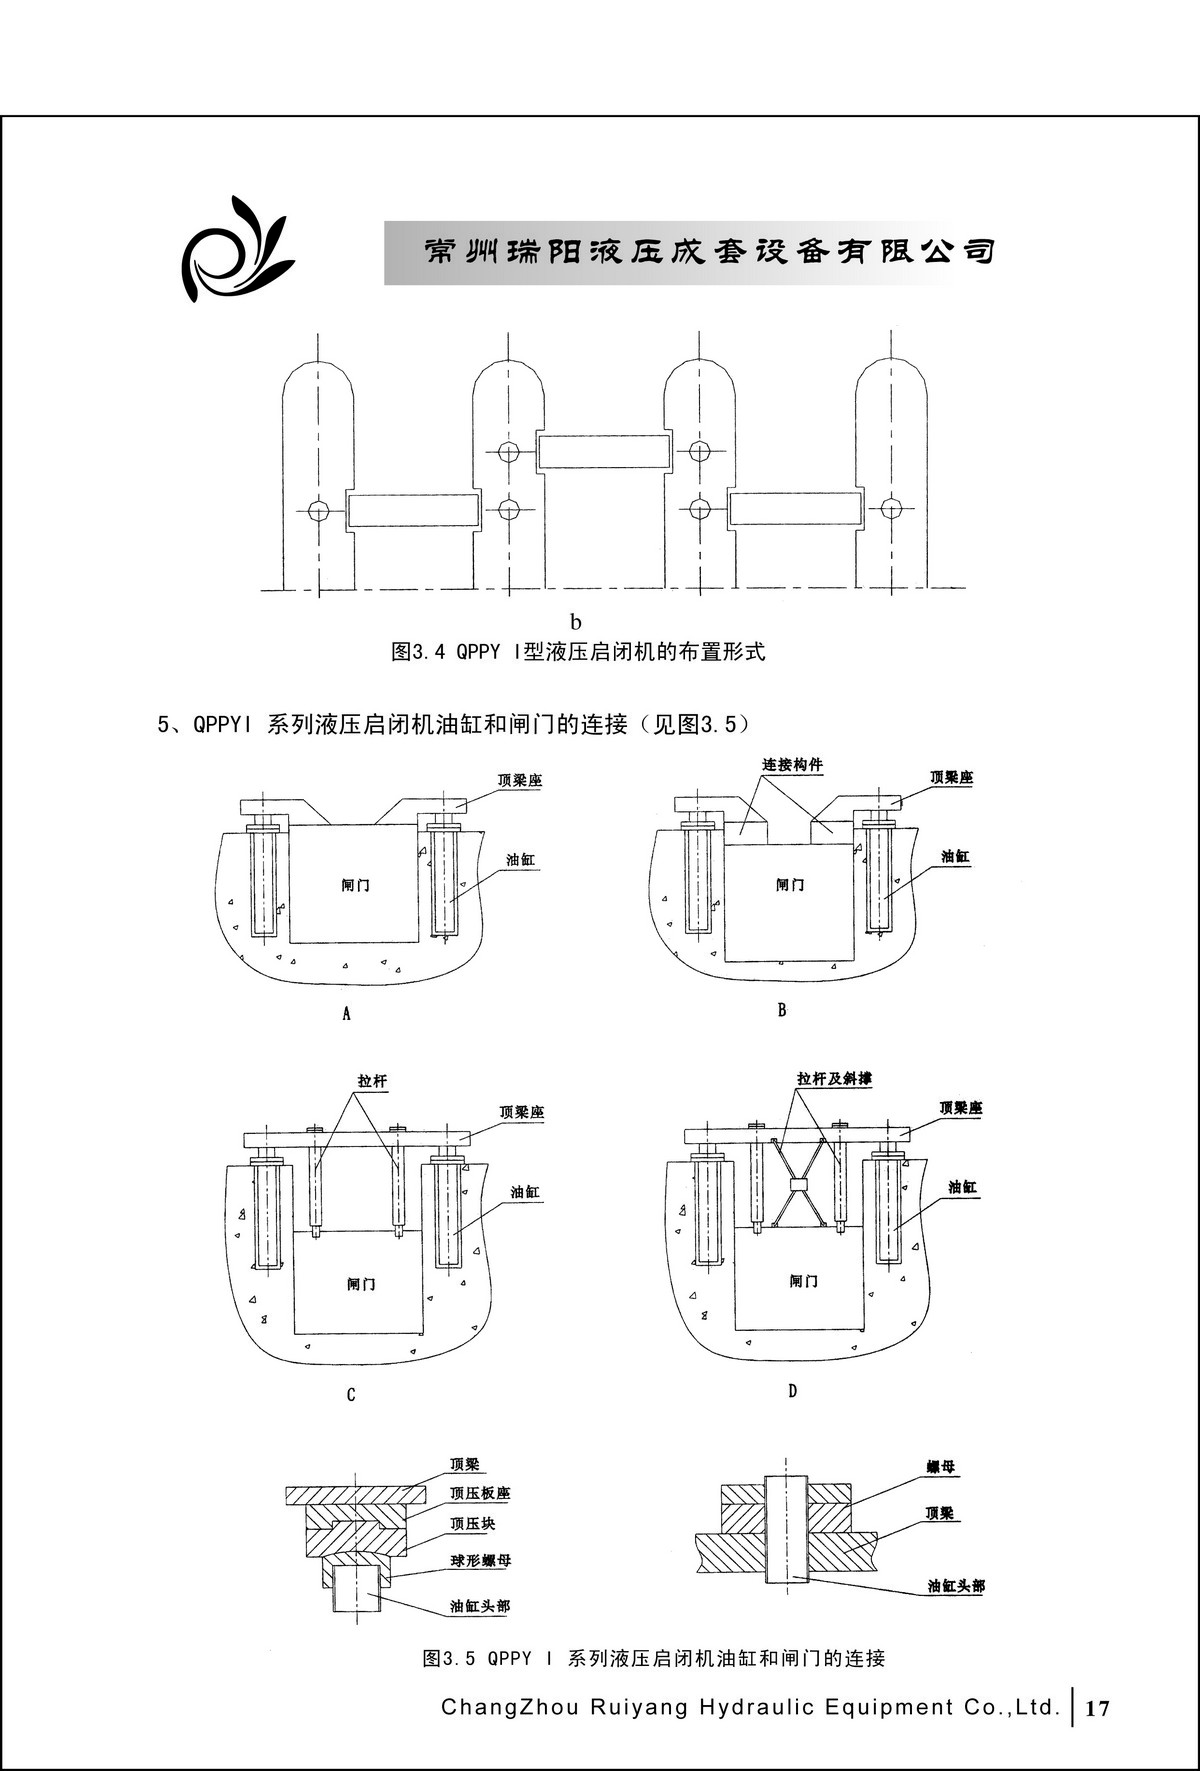 常州瑞阳液压成套设备有限公司产品样本2_页面_17.JPG